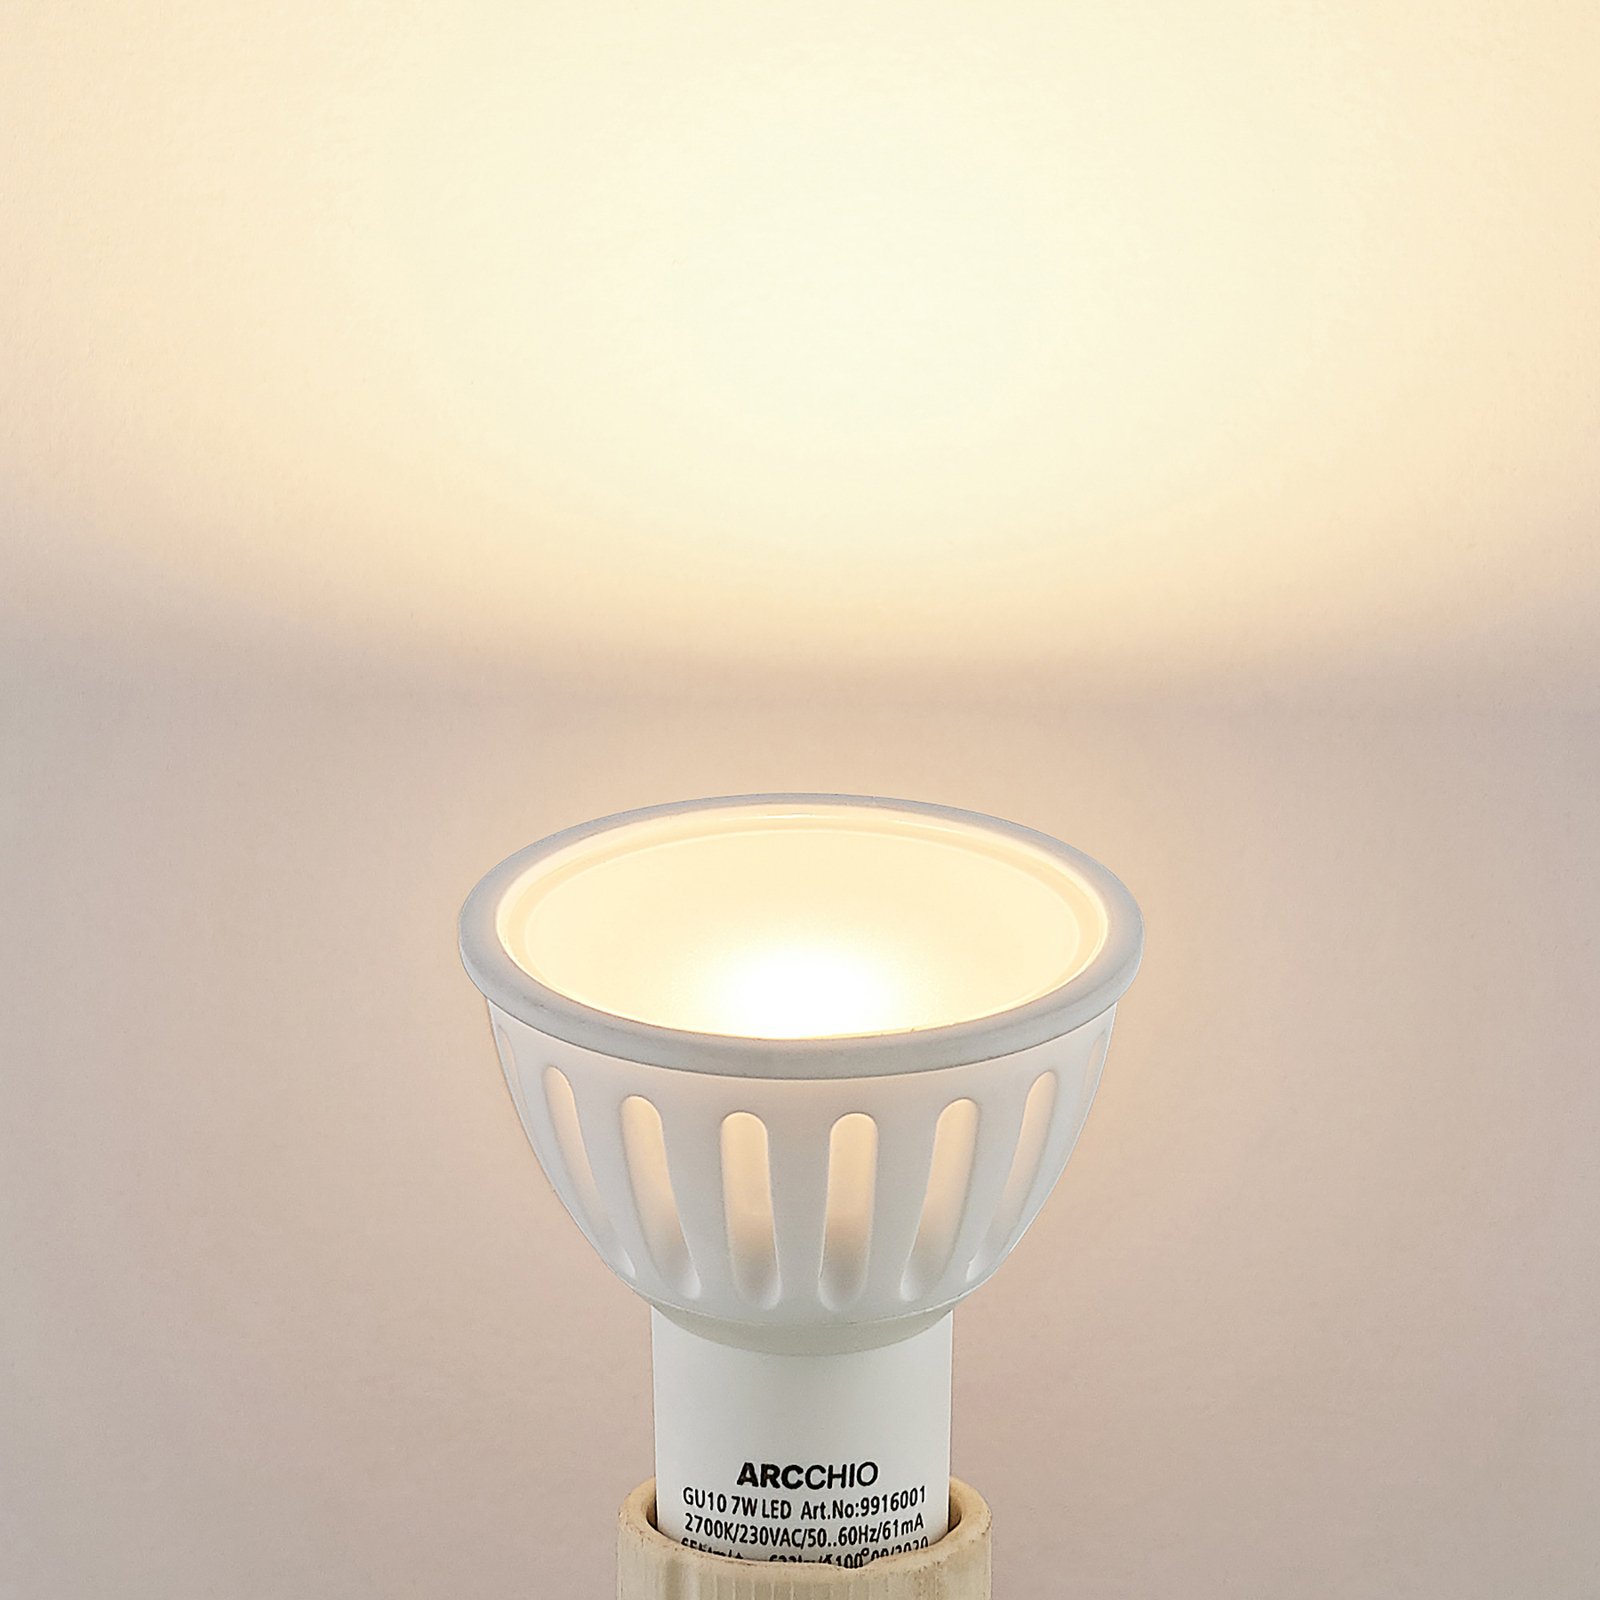 Arcchio reflector LED bulb GU10 100° 7W 2,700K 2x